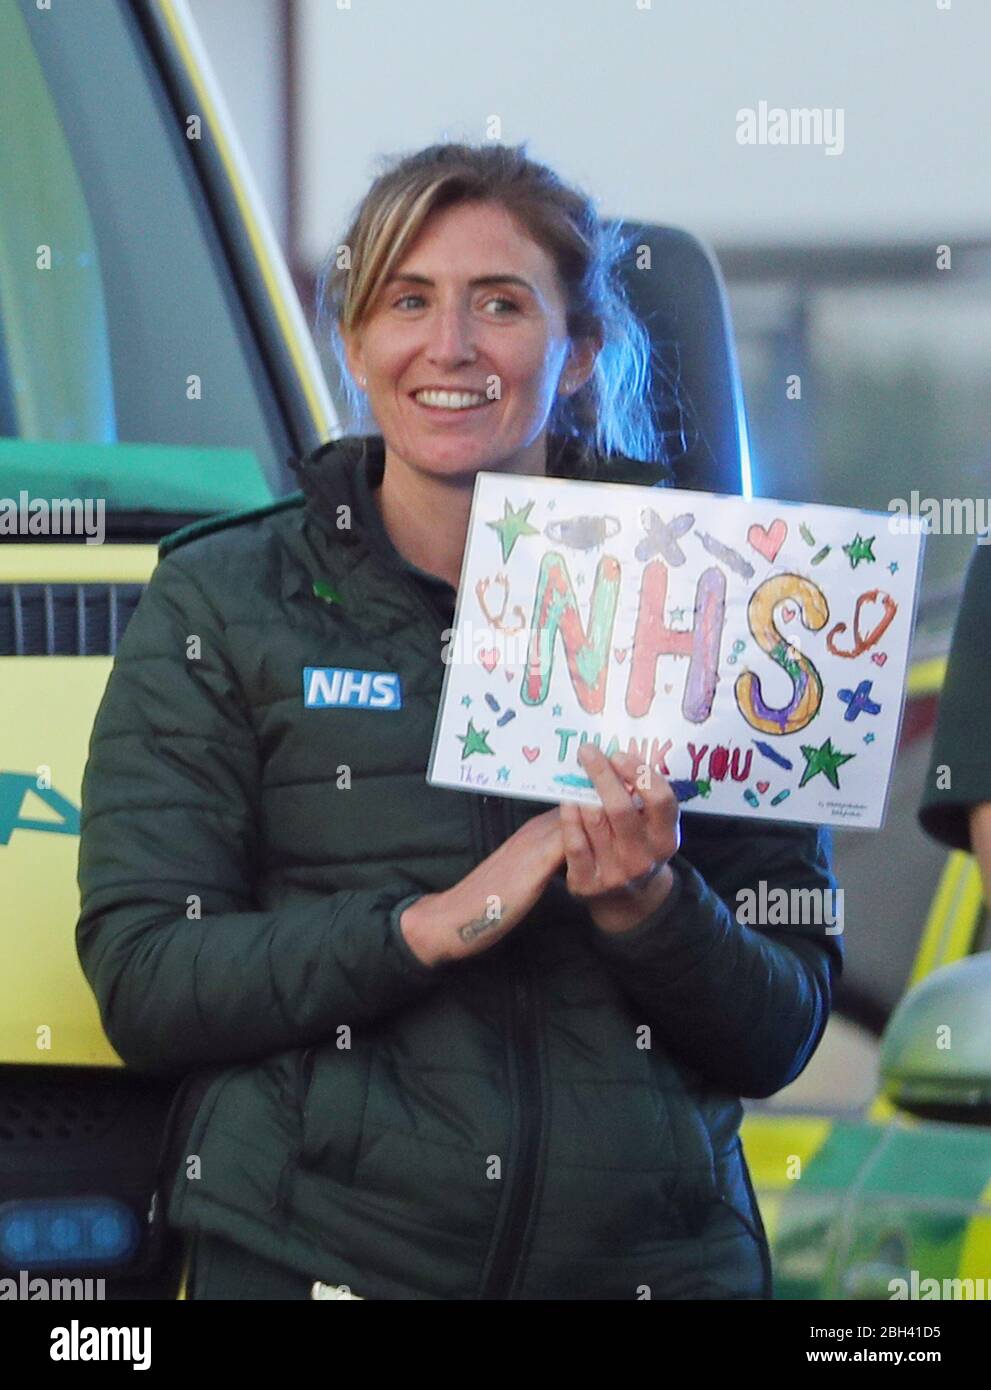 Un paramedico al di fuori del Royal Bournemouth Hospital si unisce agli applausi per salutare gli eroi locali durante l'iniziativa Clap for Carers di Giovedi a livello nazionale per riconoscere e sostenere i lavoratori e gli operatori del NHS che combattono la pandemia di coronavirus. Foto Stock